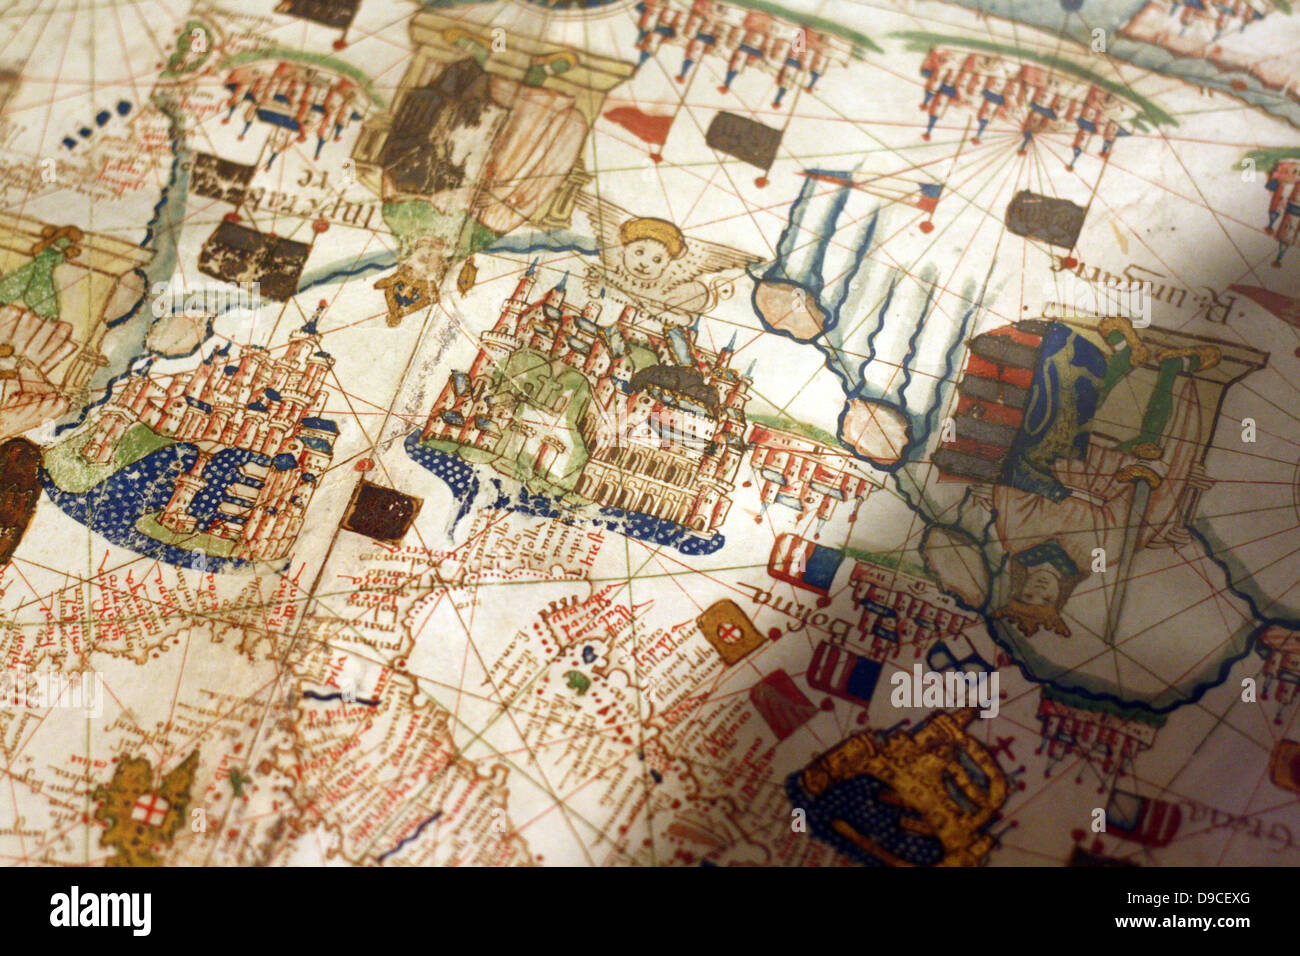 Nord (Haut) vue d'une carte de navigation de l'Europe et le Moyen-Orient de Jacopo Russo 1528, Messine. La Sicile. Montrant la Suisse, l'Italie  ; Balkans et la Hongrie Banque D'Images